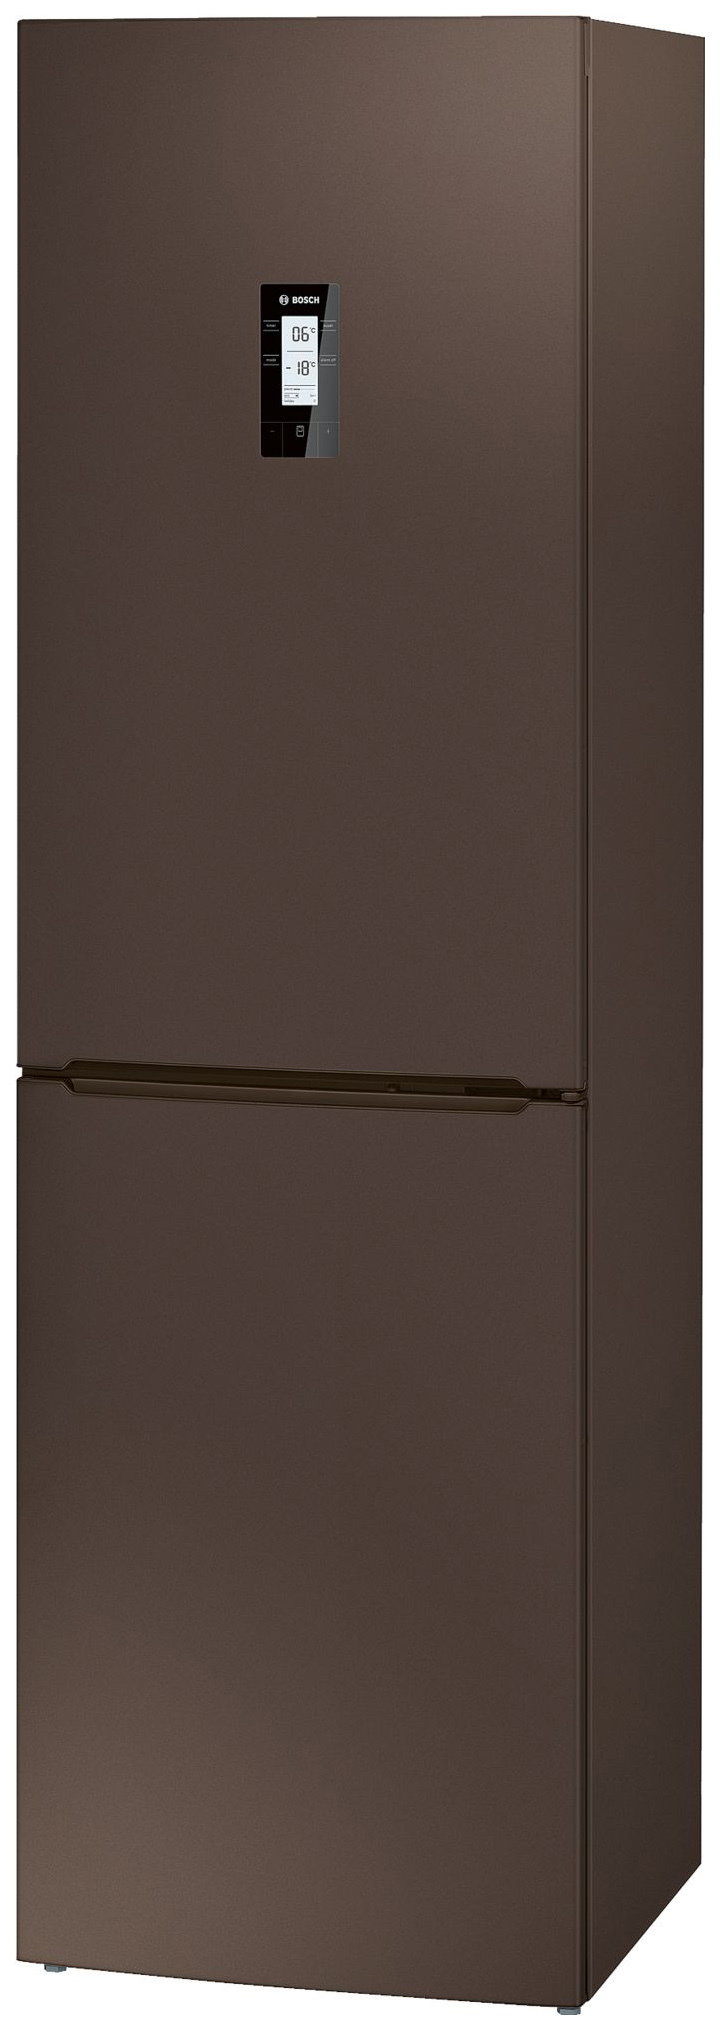 Холодильник Bosch KGN39XD18R коричневый кронштейн apecs sb 100х75 мм коричневый